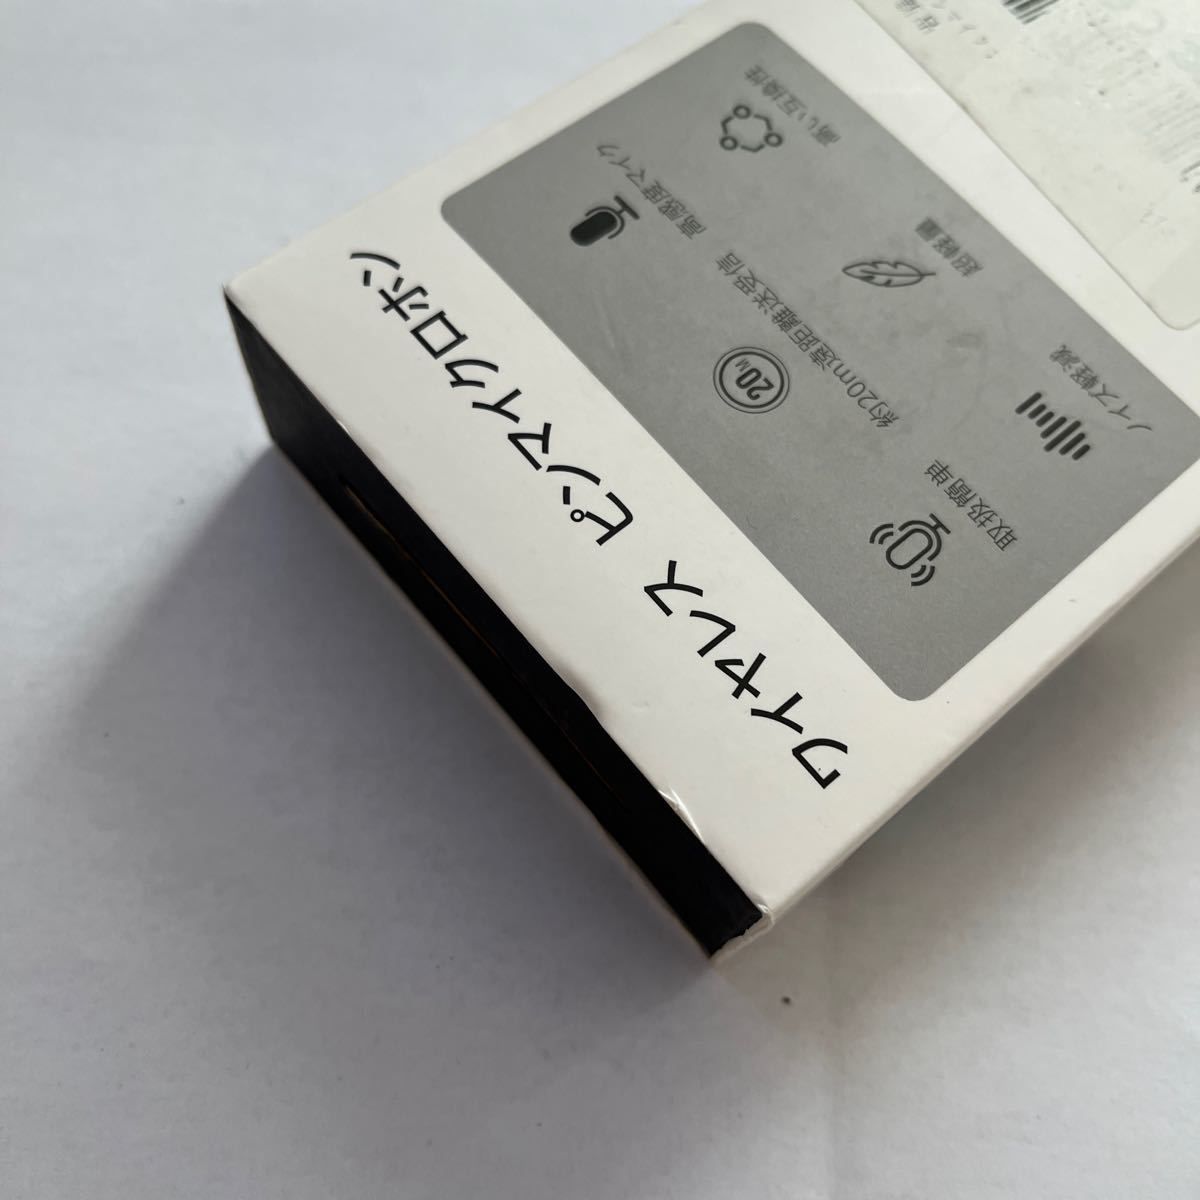 510a3025☆ ピンマイク ワイヤレスiPhone/iPad用ピンマイク【最新バージョン】ワイヤレスマイク 360°集音 瞬時接続 ノイズ軽減 _画像7